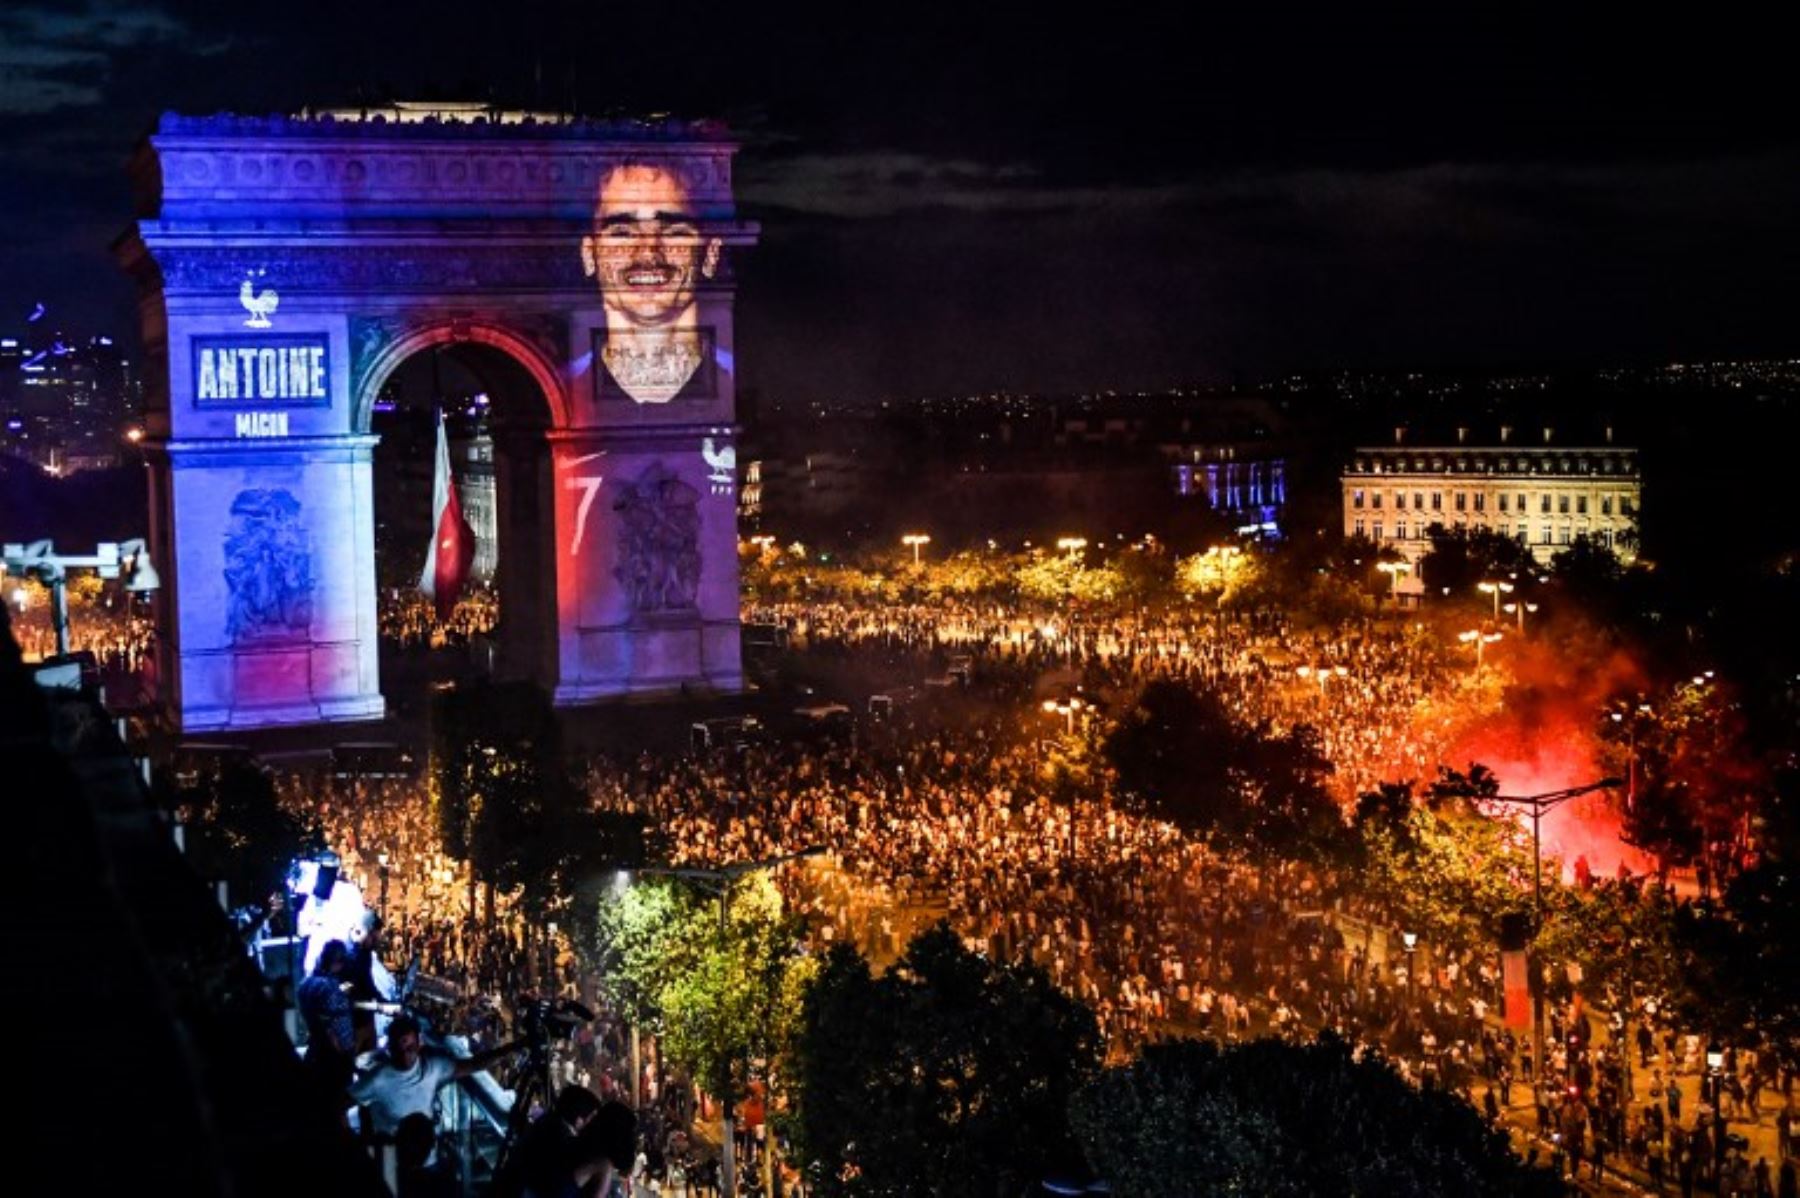 Retrato del delantero francés Antoine Griezmann proyectado en el Arco del Triunfo de París, mientras la gente  celebra la victoria de Francia como campeón de la Copa Mundial Rusia 2018.Foto:AFP